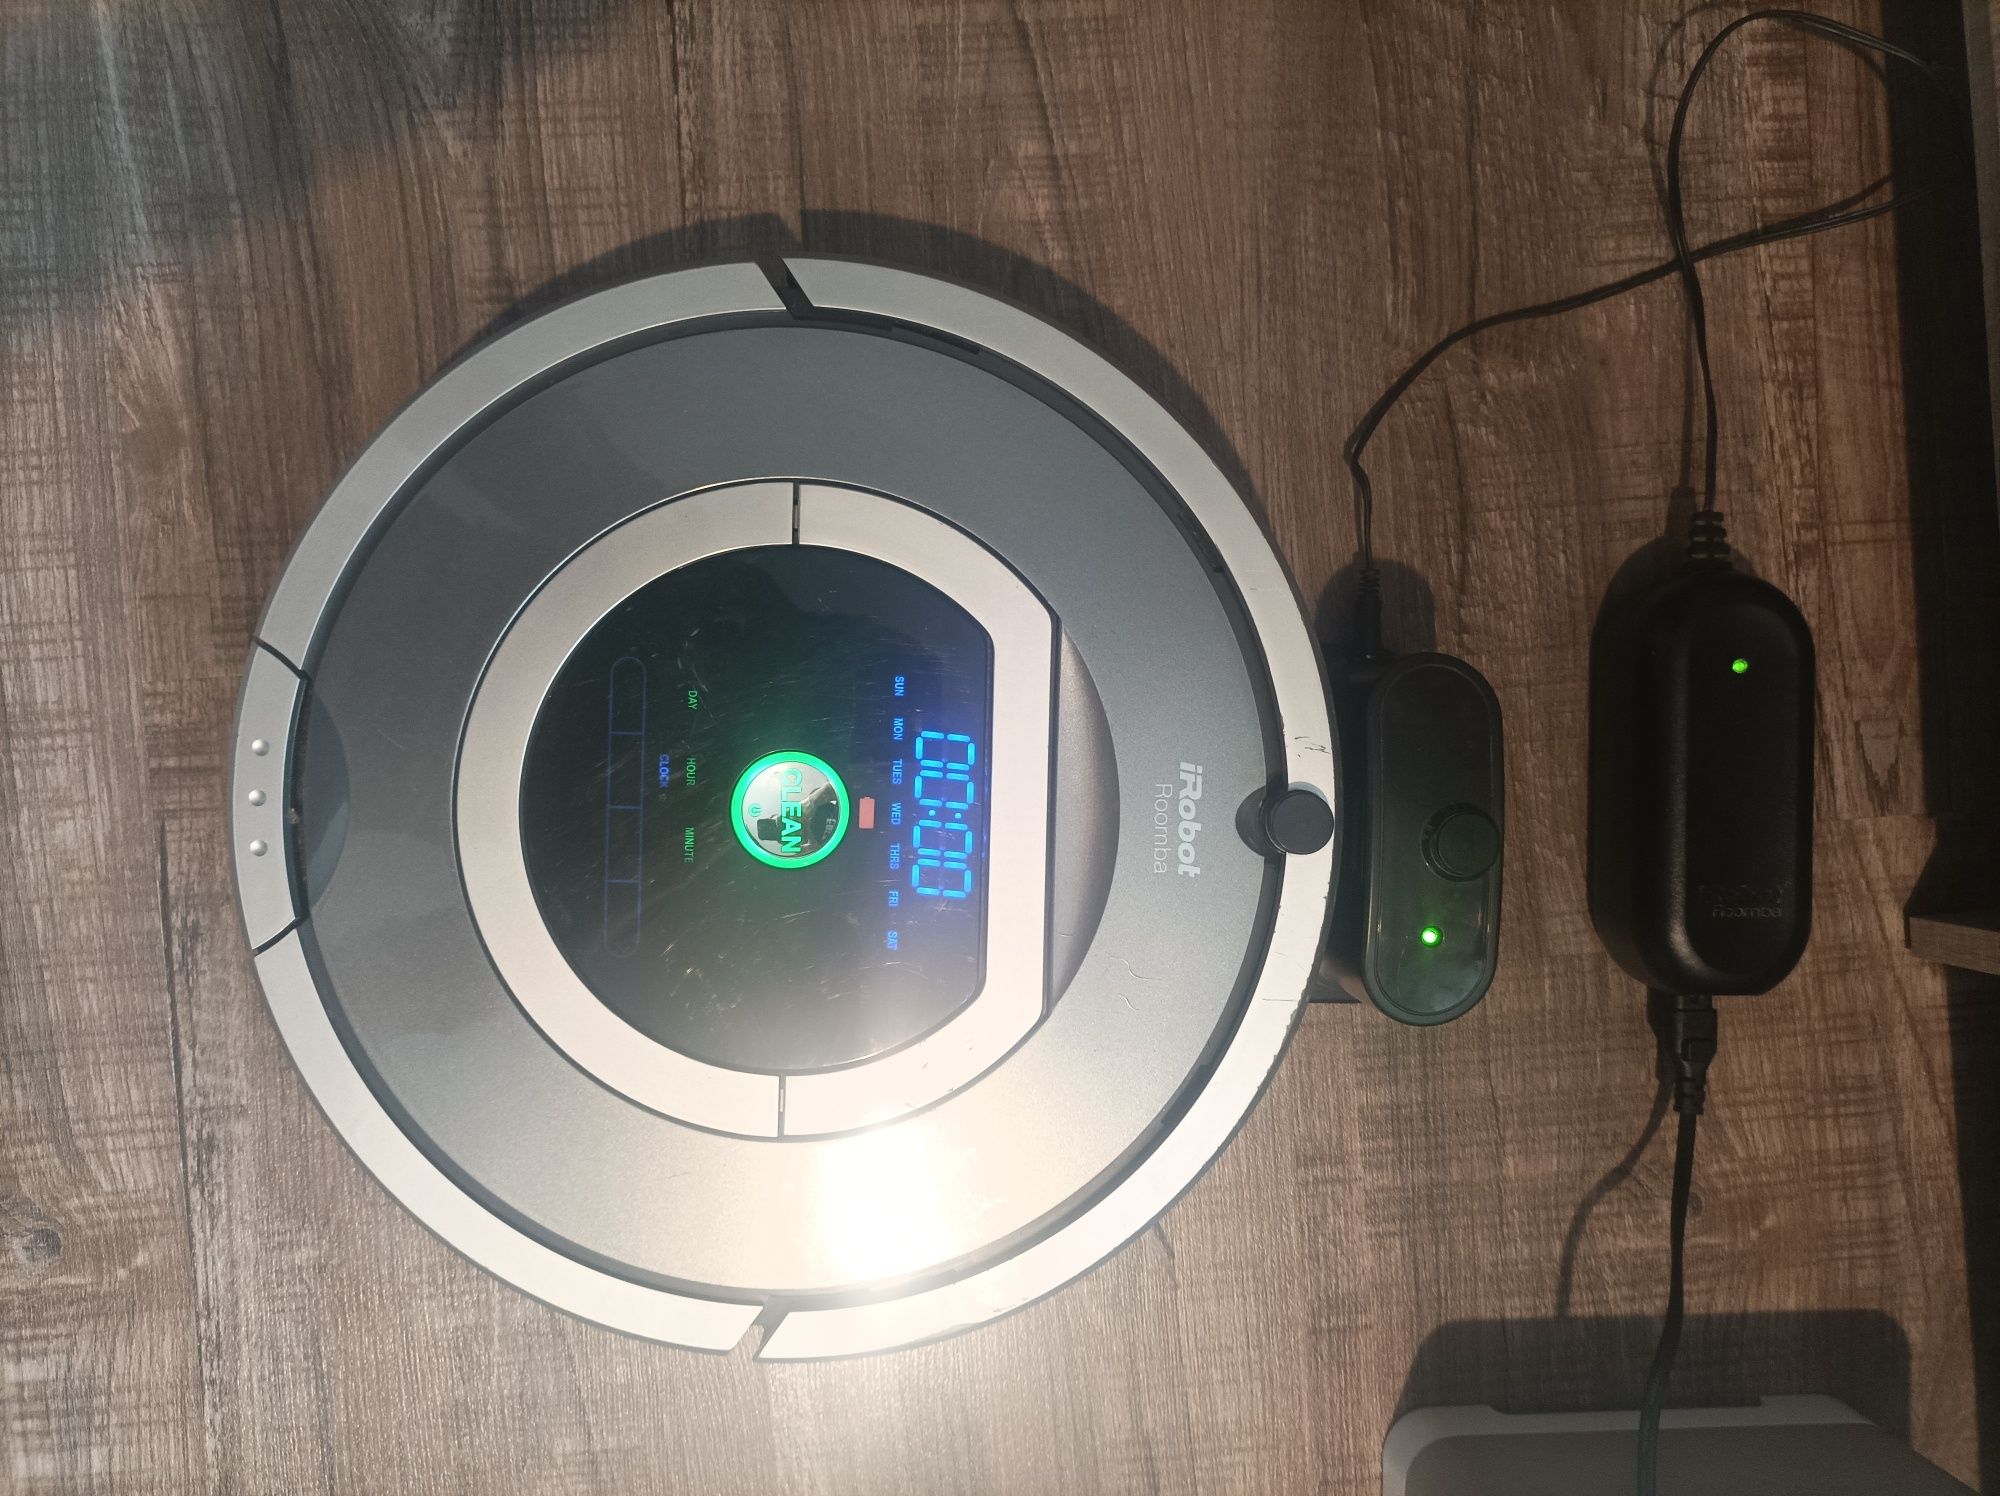 Робот прахосмукачка роботизирана IRobot Roomba 780